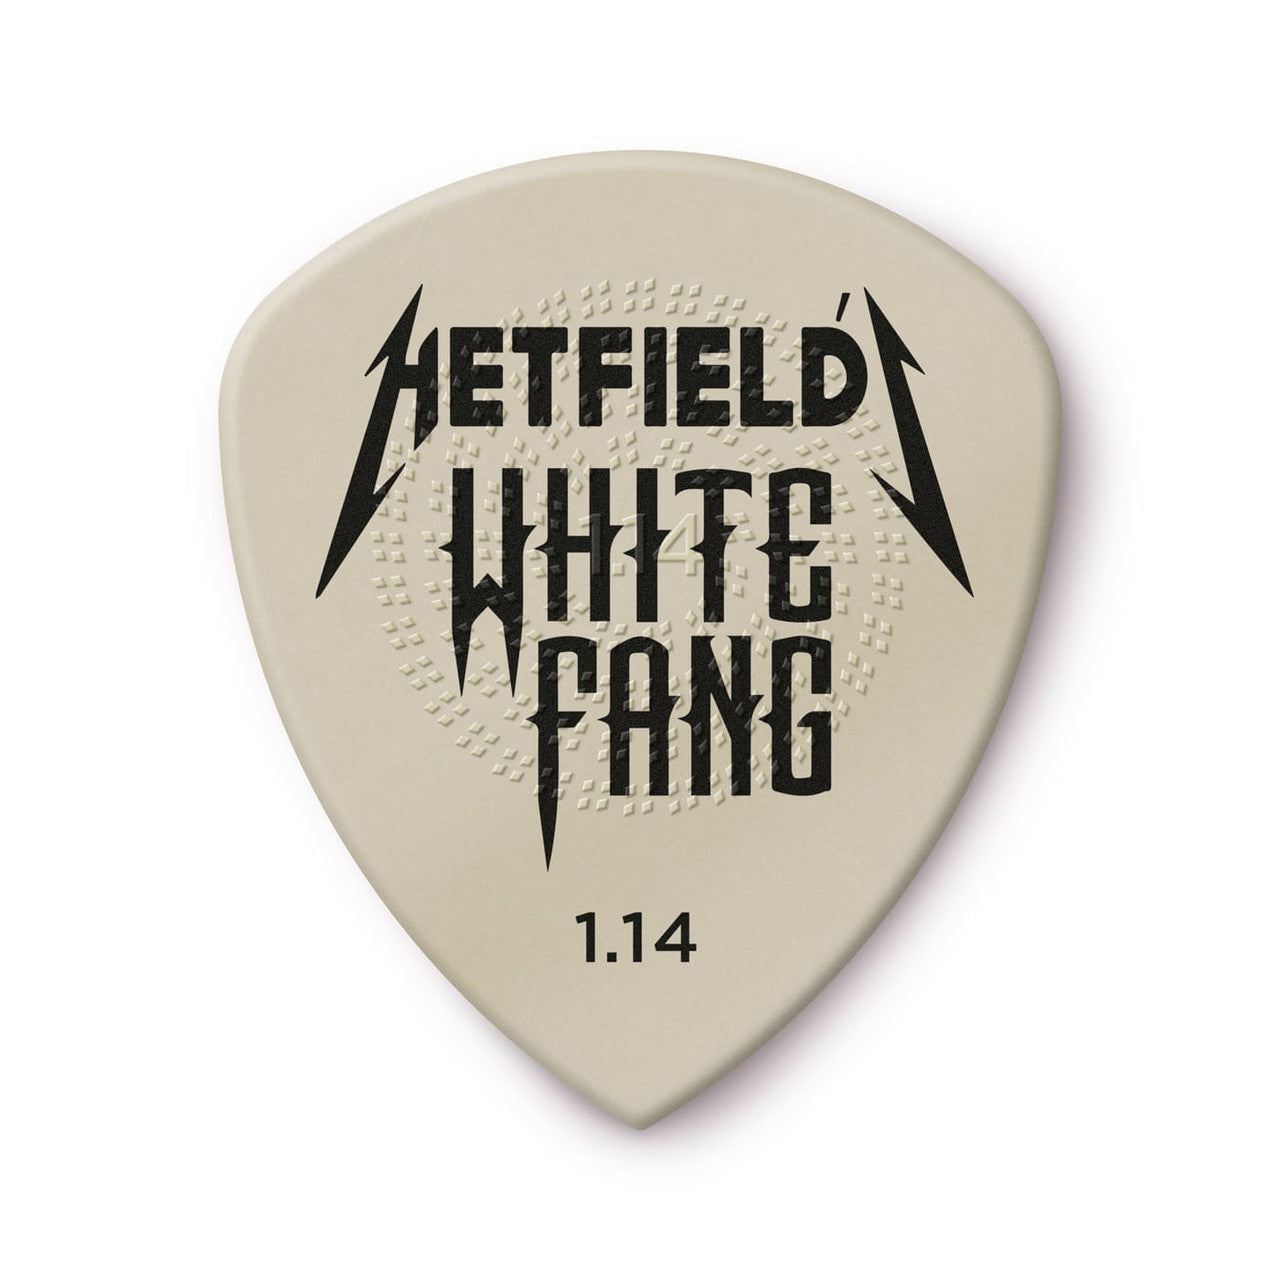 Dunlop Hetfield's White Fang™ Custom Flow® Pick 1.14mm Gauge